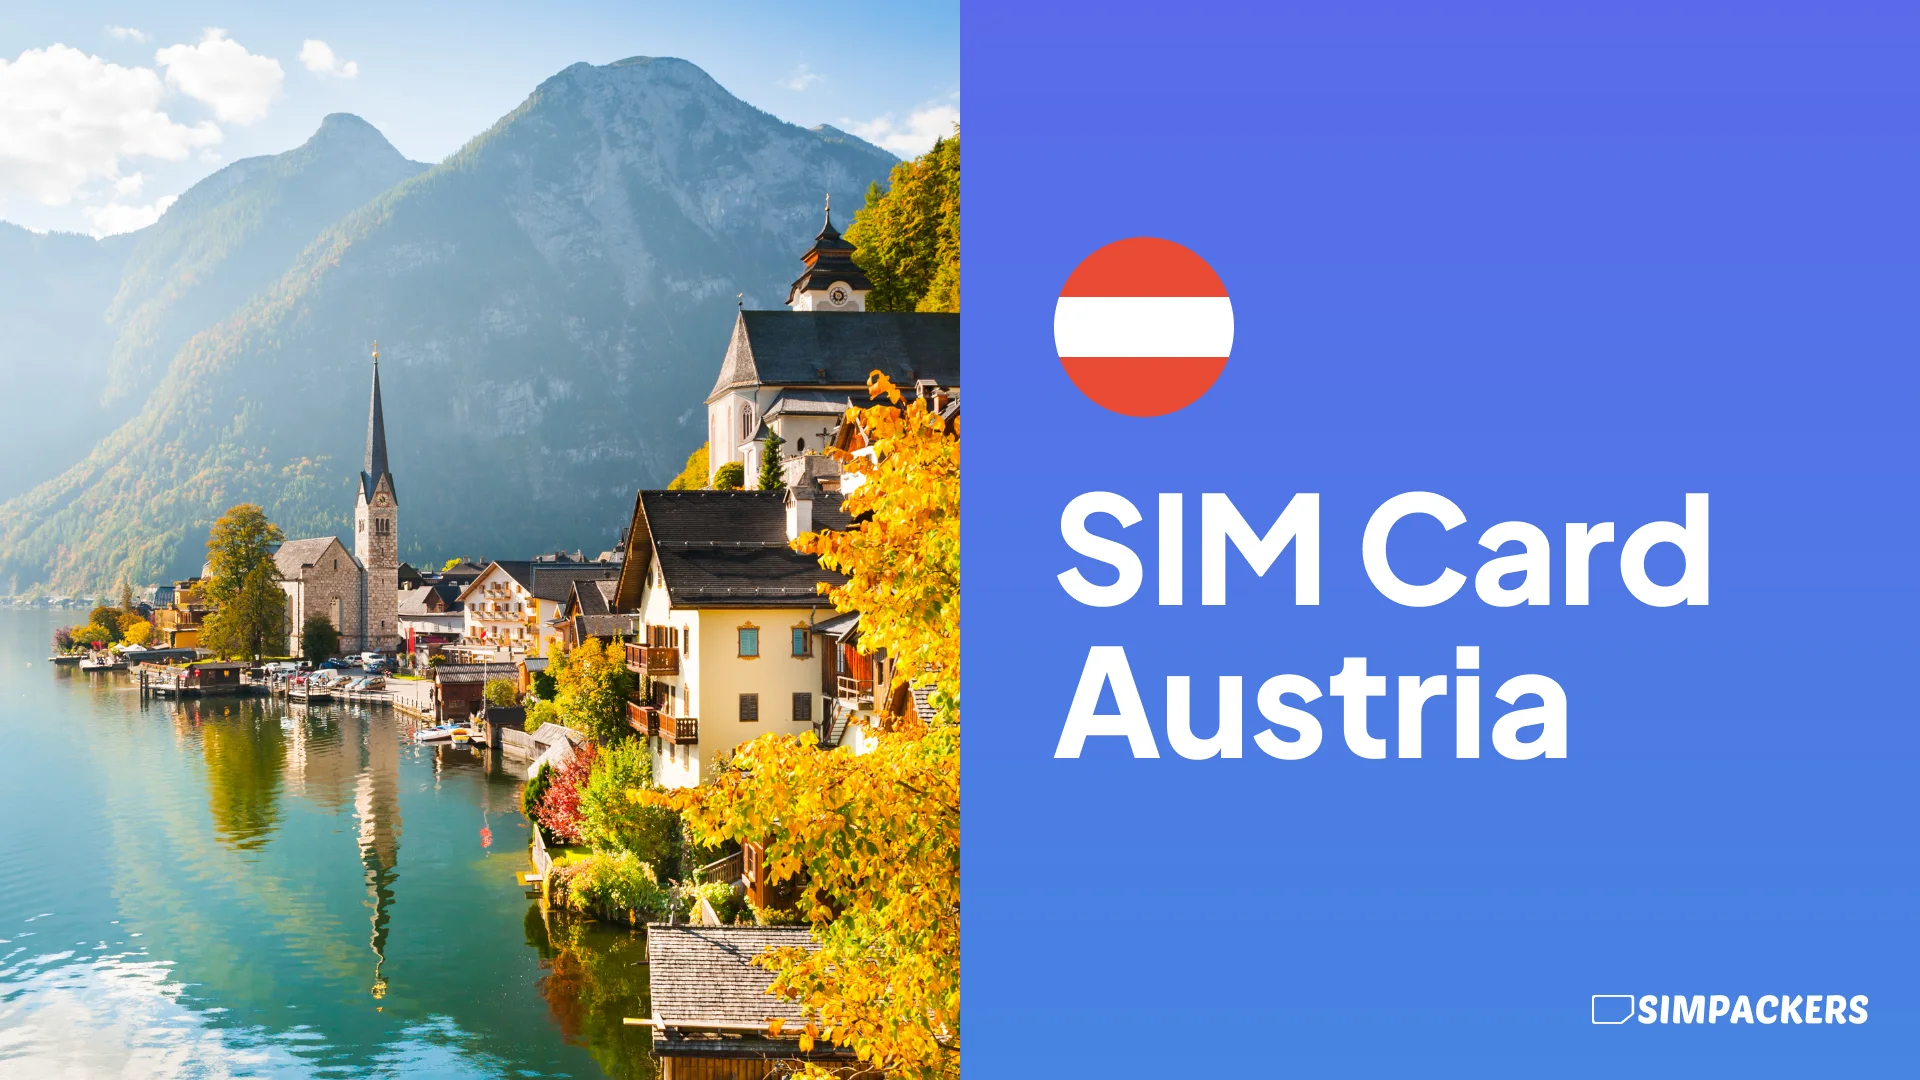 EN/FEATURED_IMAGES/sim-card-austria.webp